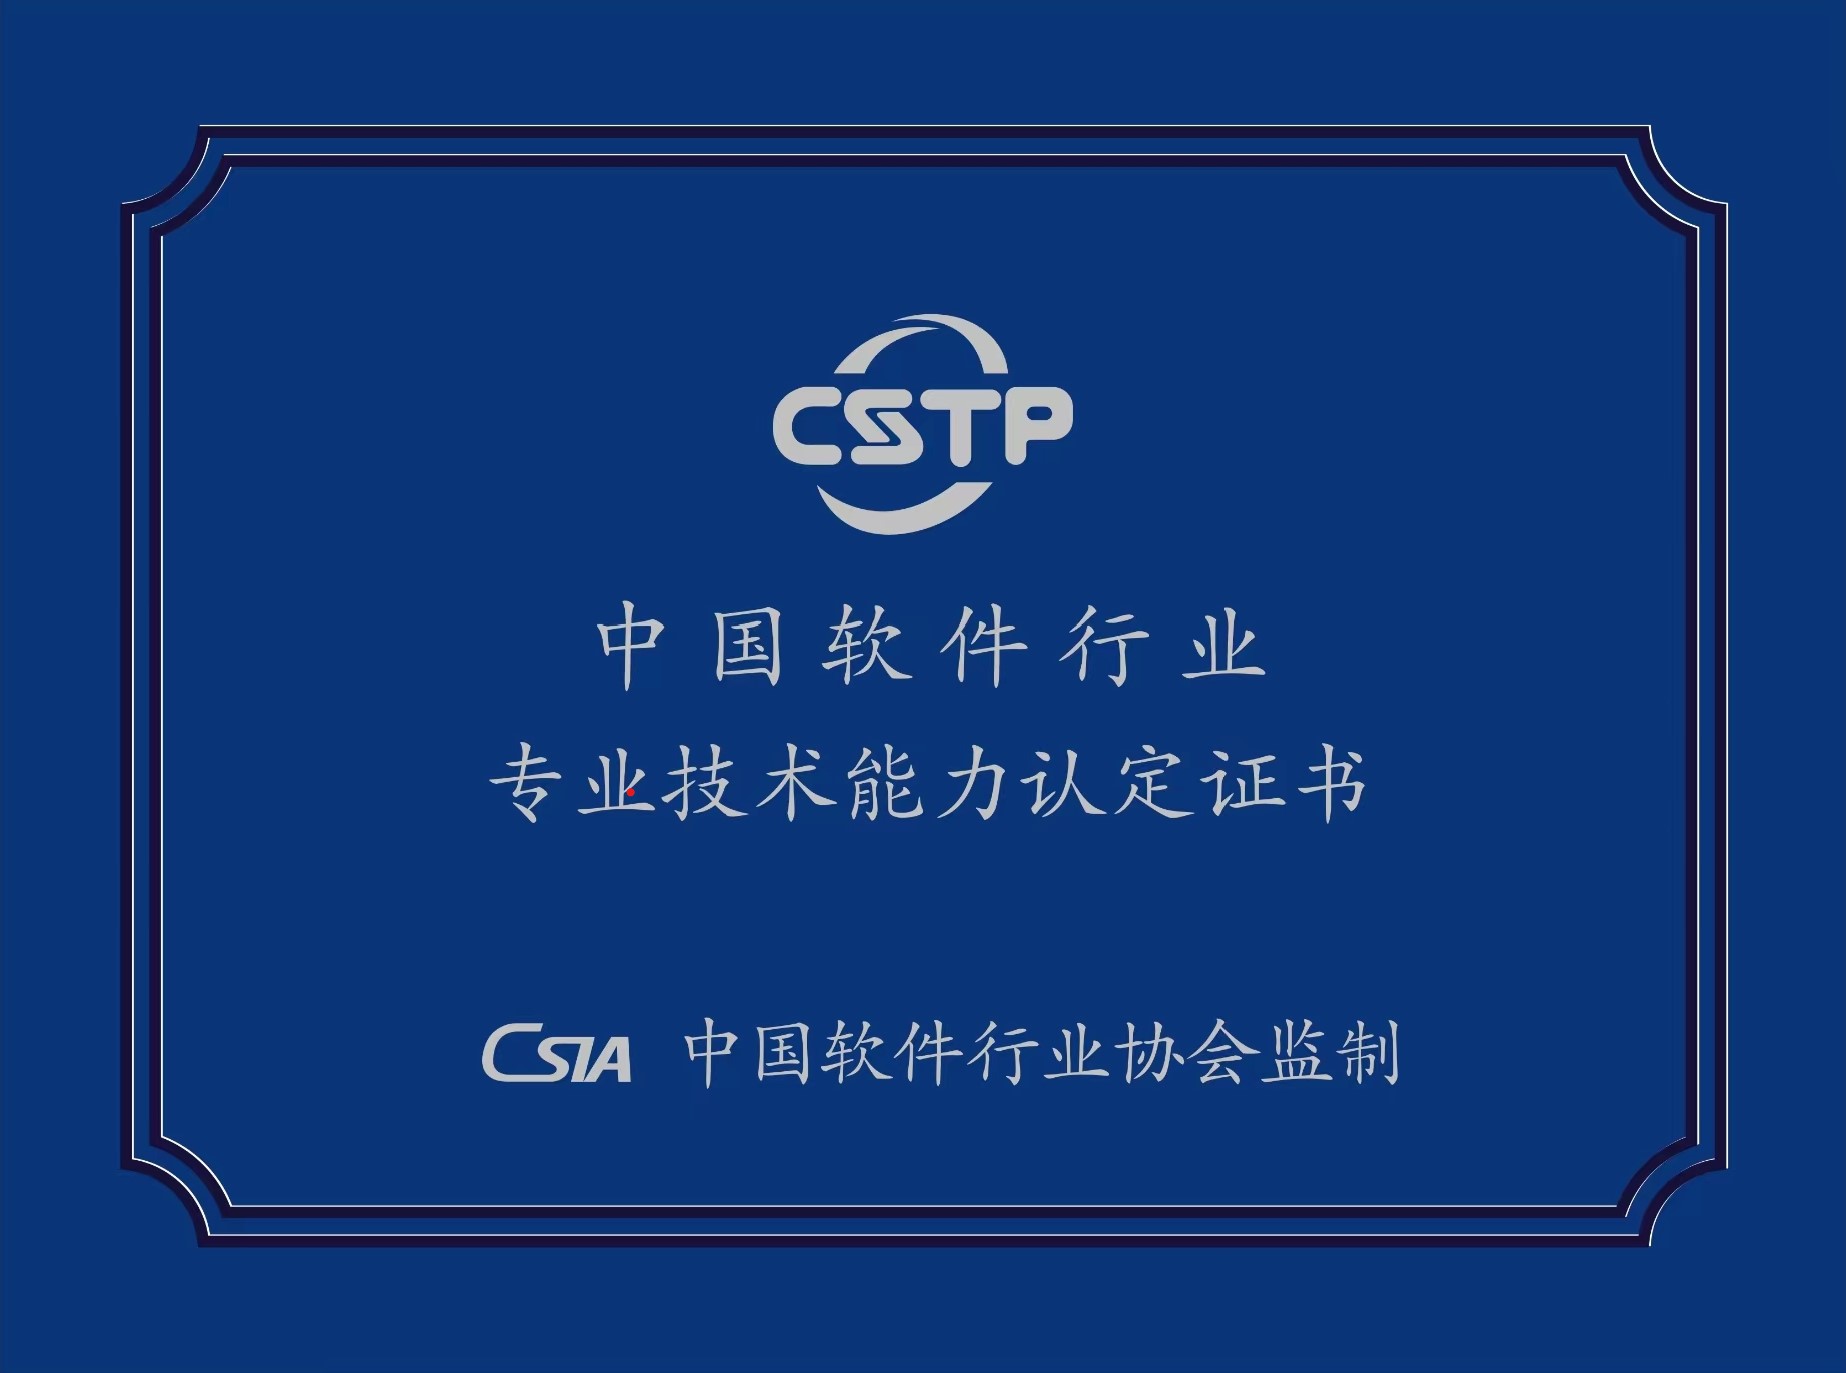 “中国软件专业人才培养工程”（CSTP）专业技能认证体系 资源审核结果通知